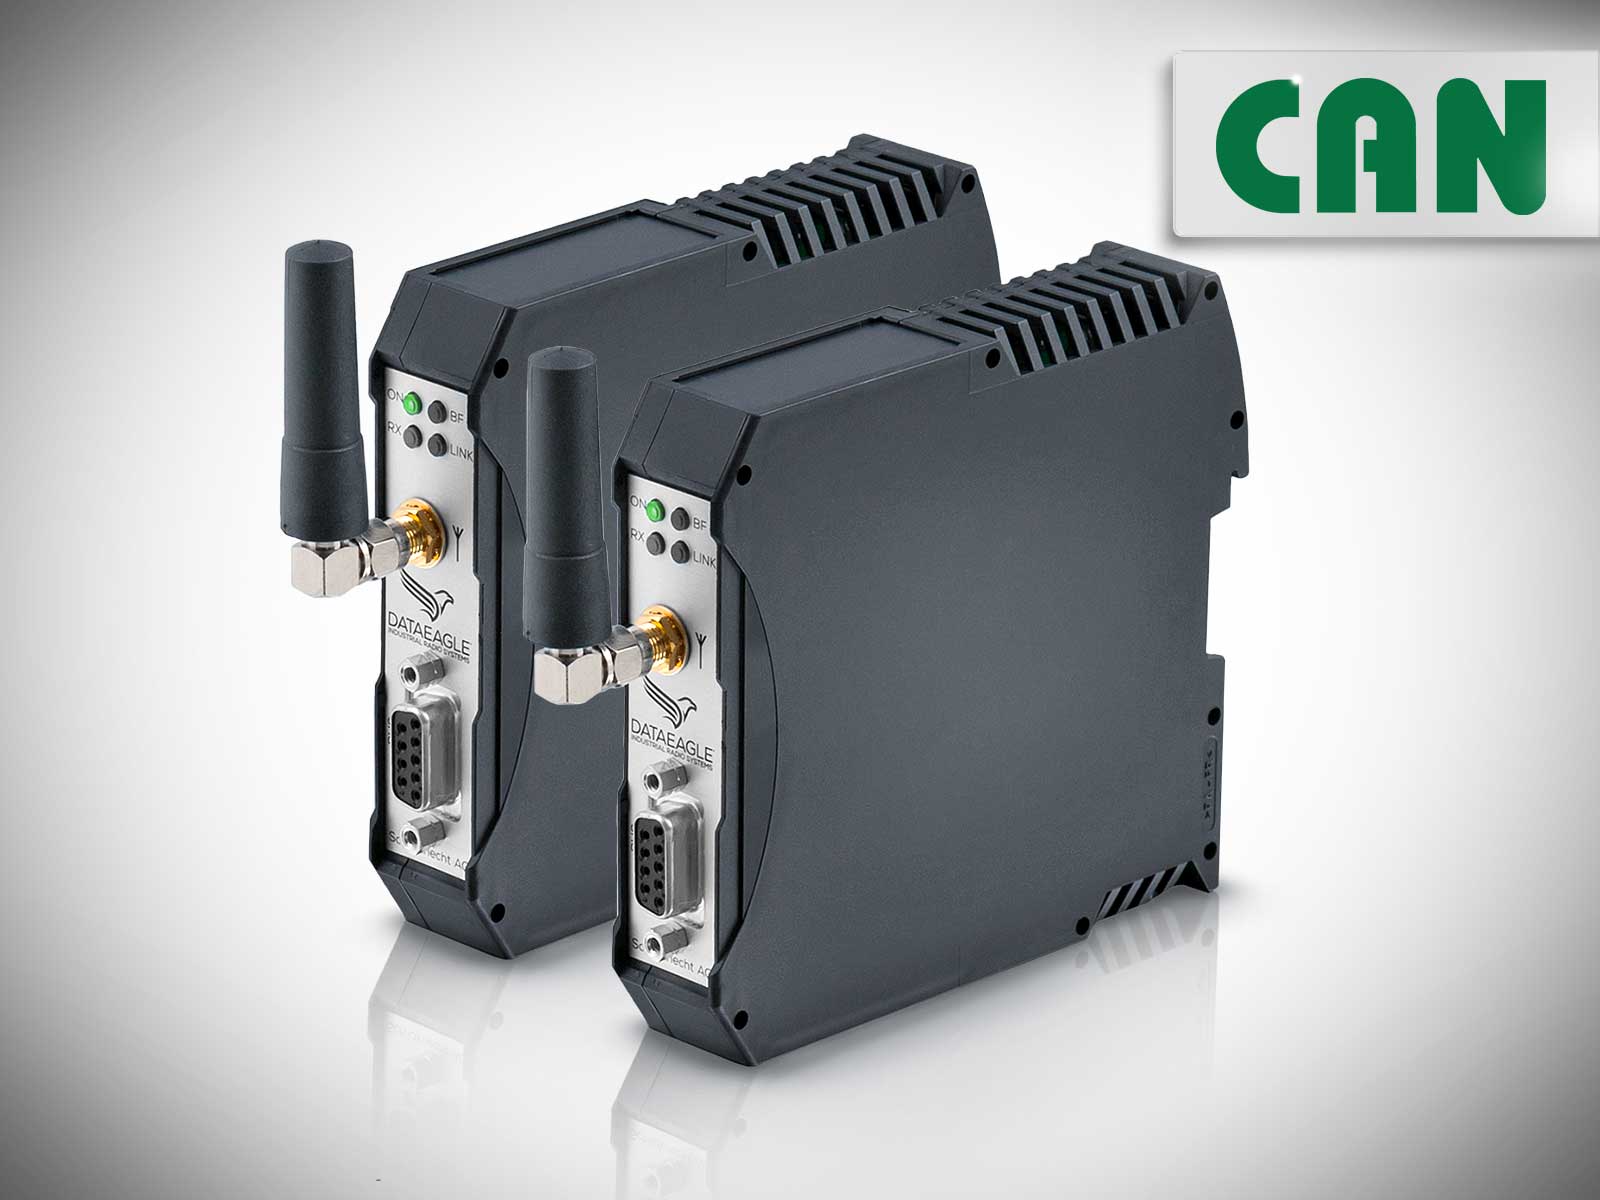 Industrial Wireless CAN • DATAEAGLE 6000 Compact • Funkmodem für die drahtlose Datenübertragung von CAN